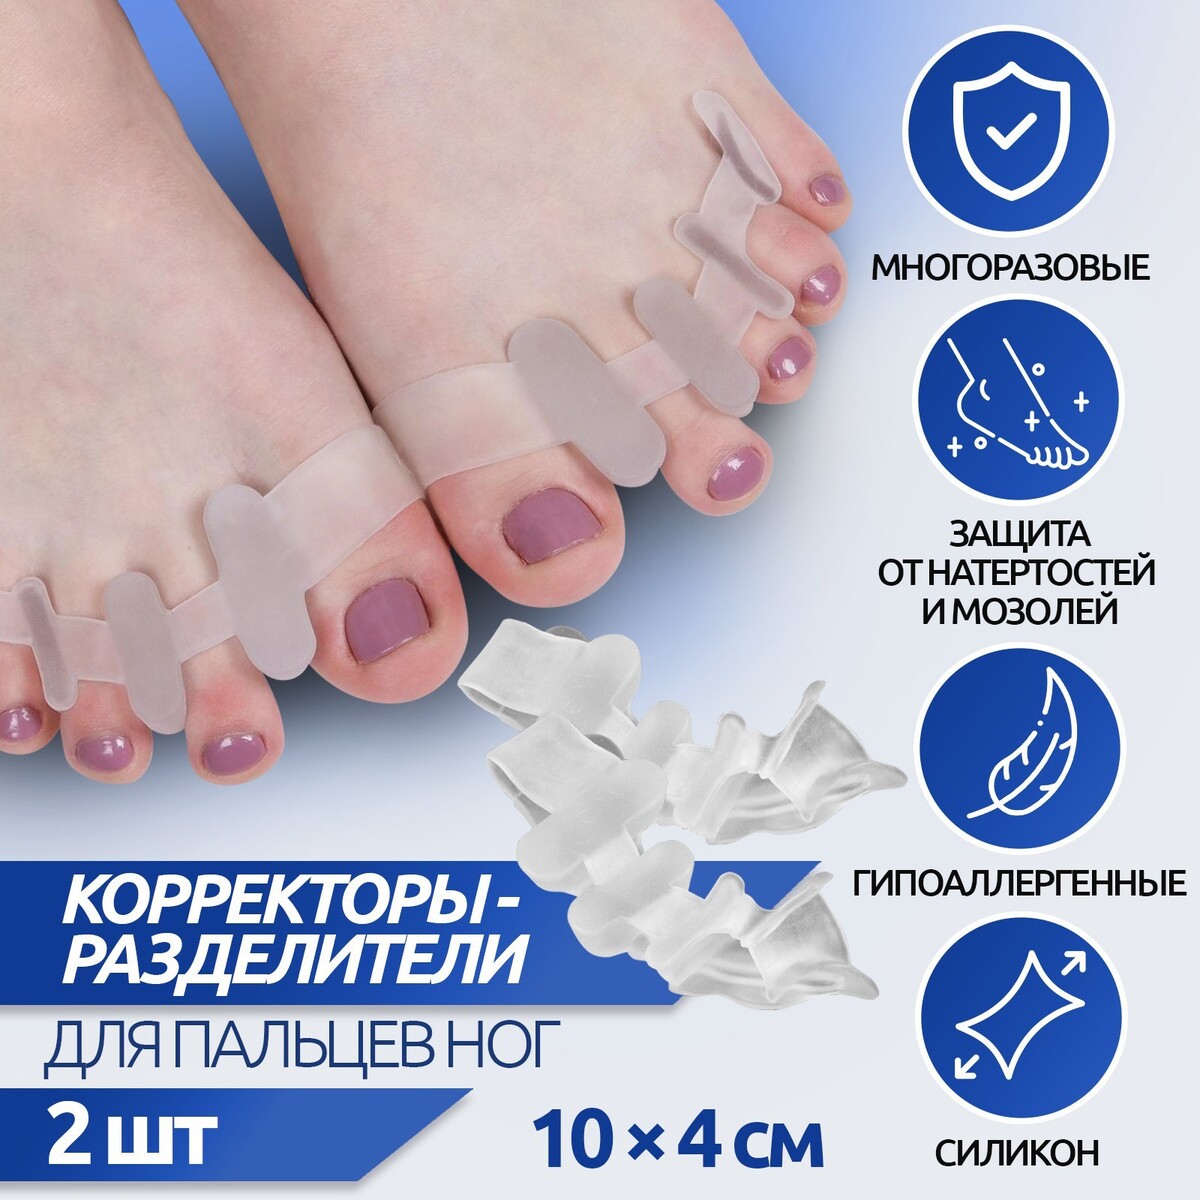 Корректоры - разделители для пальцев ног, 4 разделителя, силиконовые, 10 × 4 см, пара, цвет белый